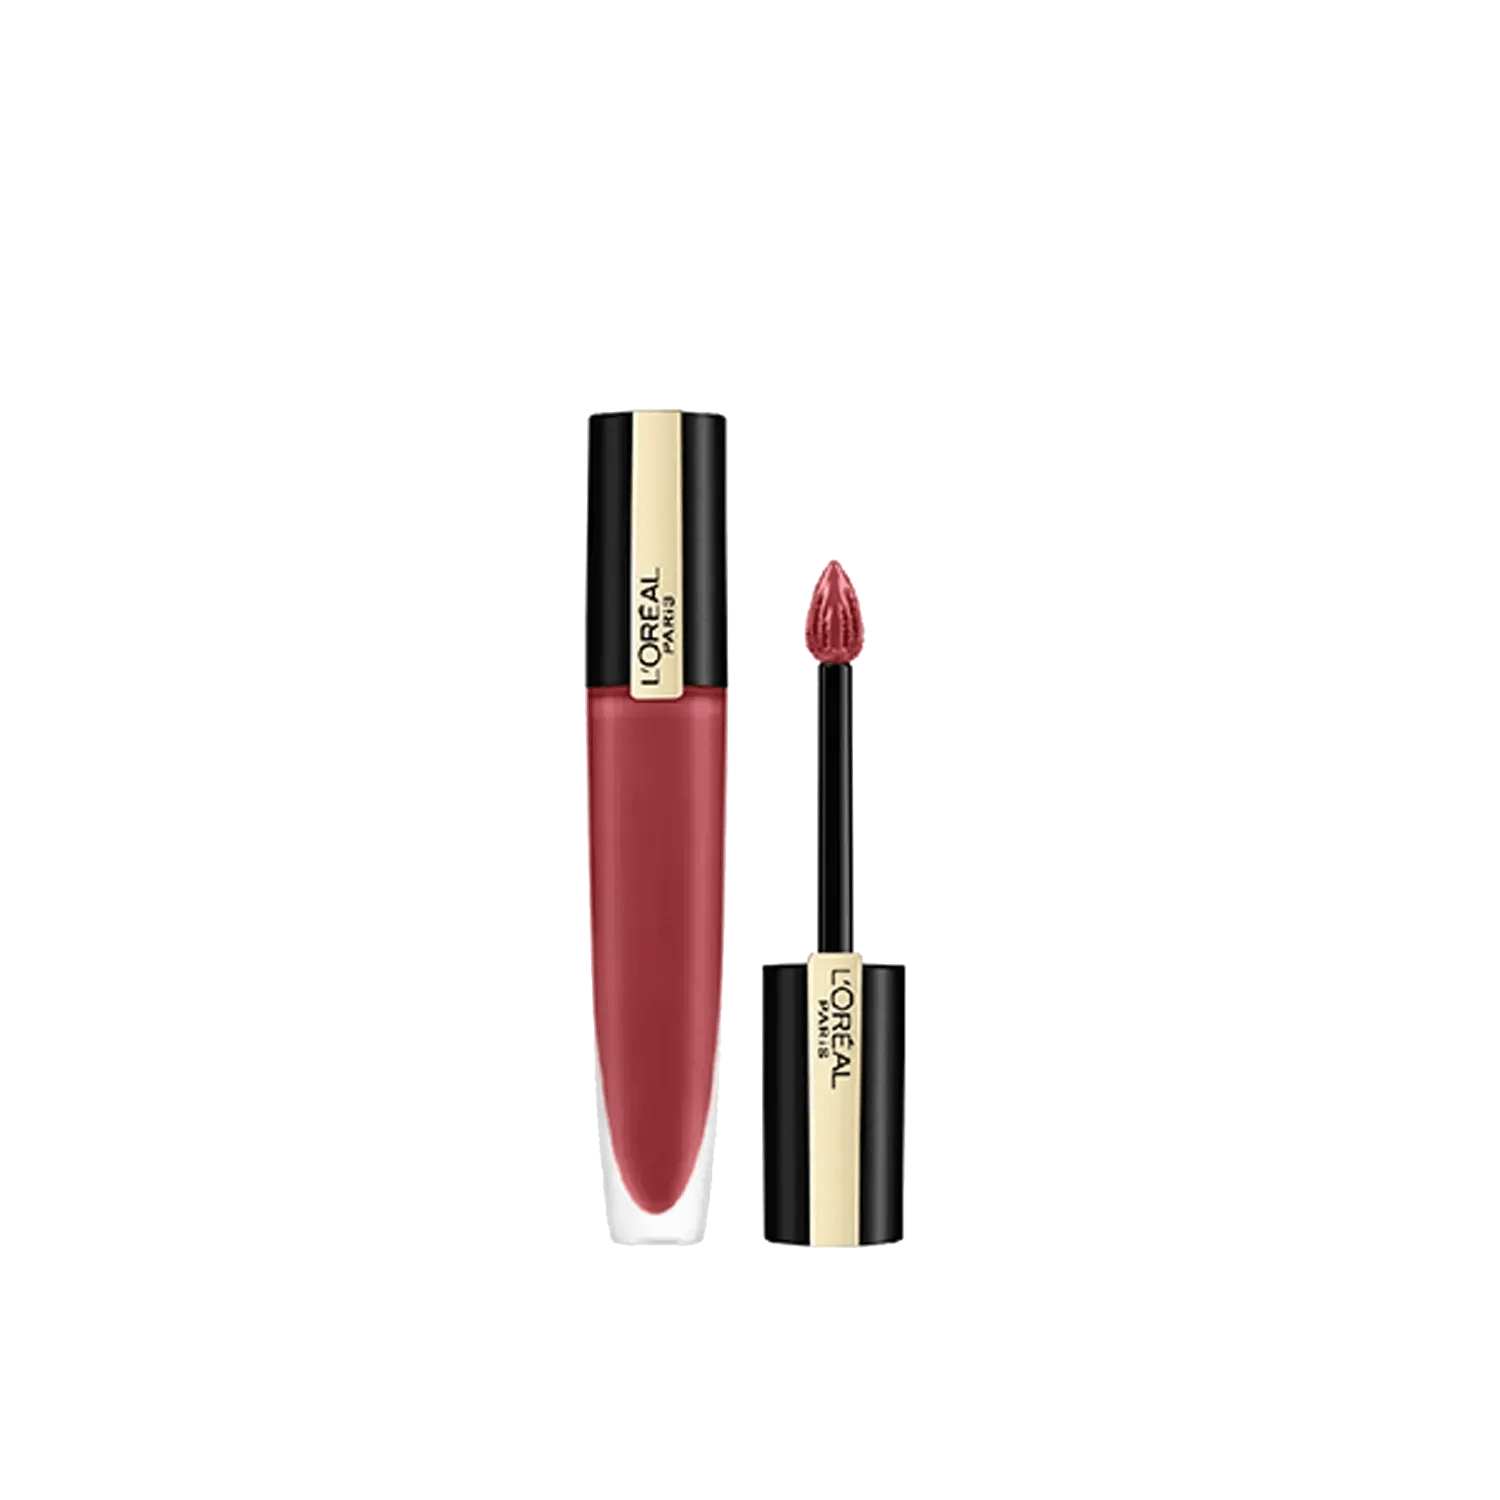 L'Oreal Paris Rouge Signature Matte Liquid Lipstick 129 I Lead (7g)